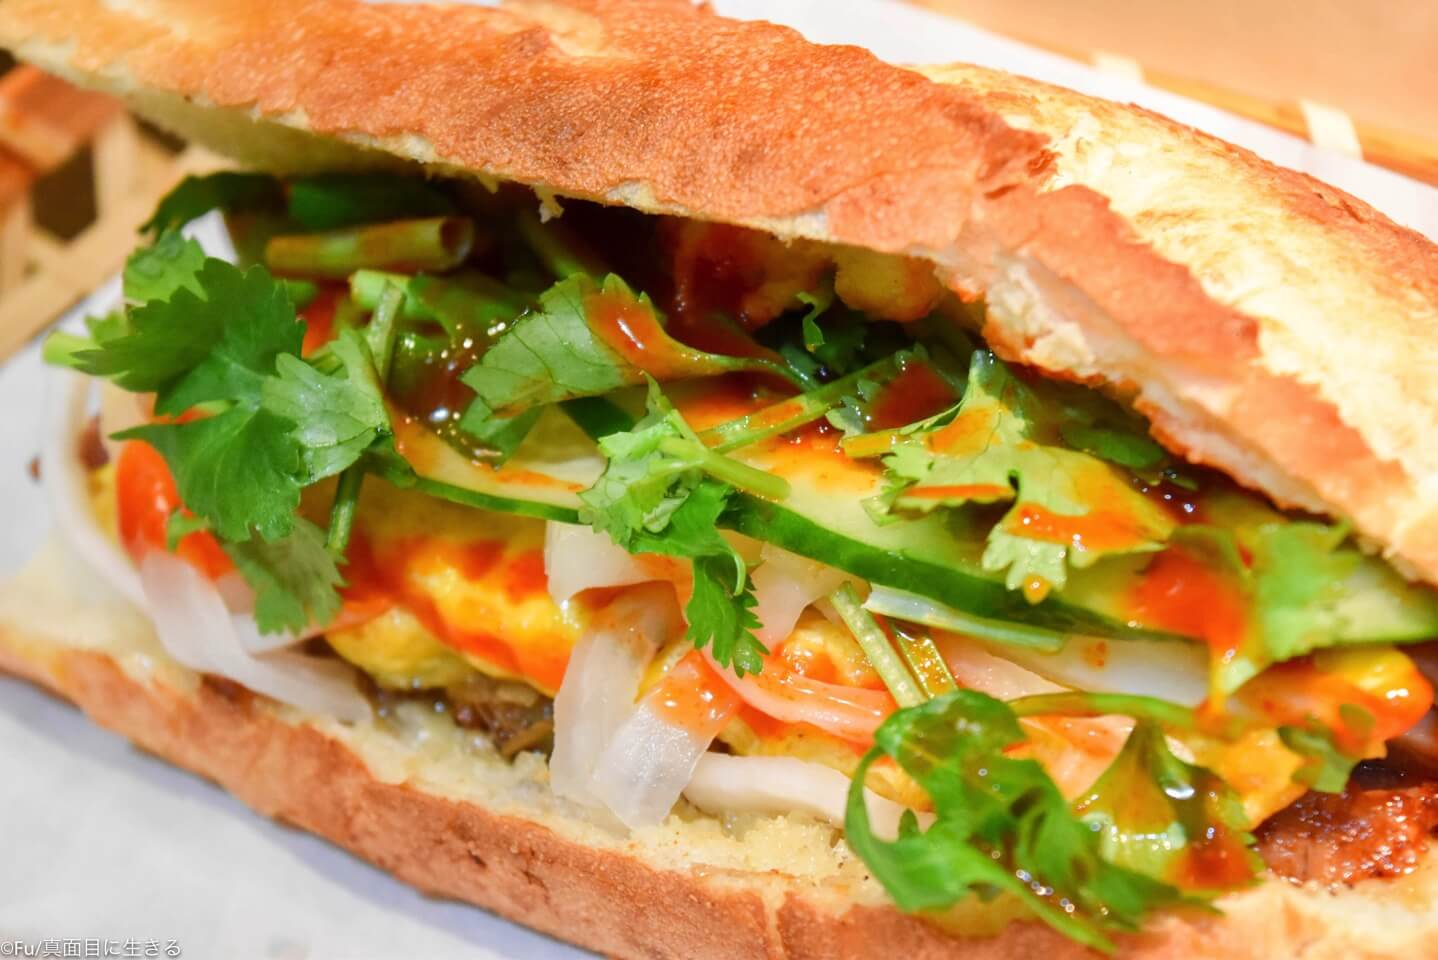 大久保駅北口から徒歩1分「ベトナムバンミー」肉とチリソースがたっぷりサンドイッチ! テイクアウトあり